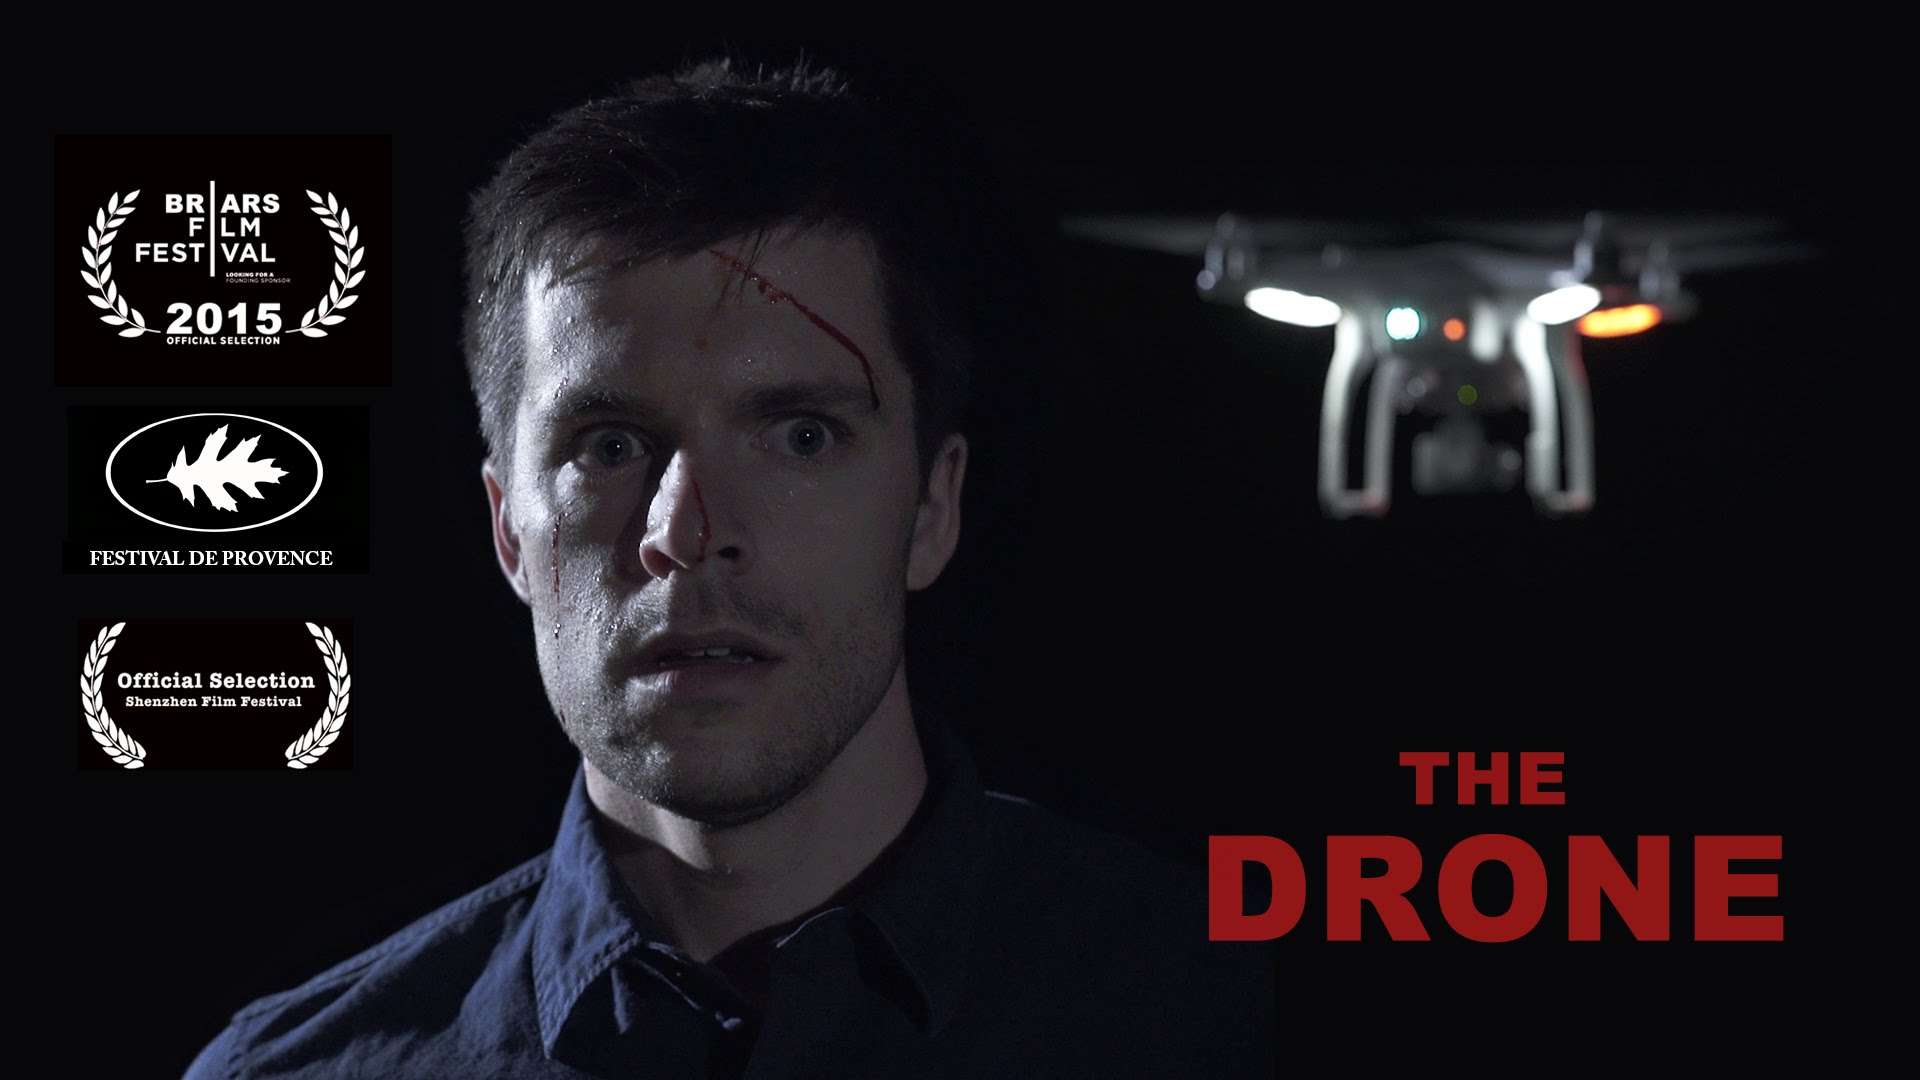 The Drone - Trailer #1 (2015) - HD